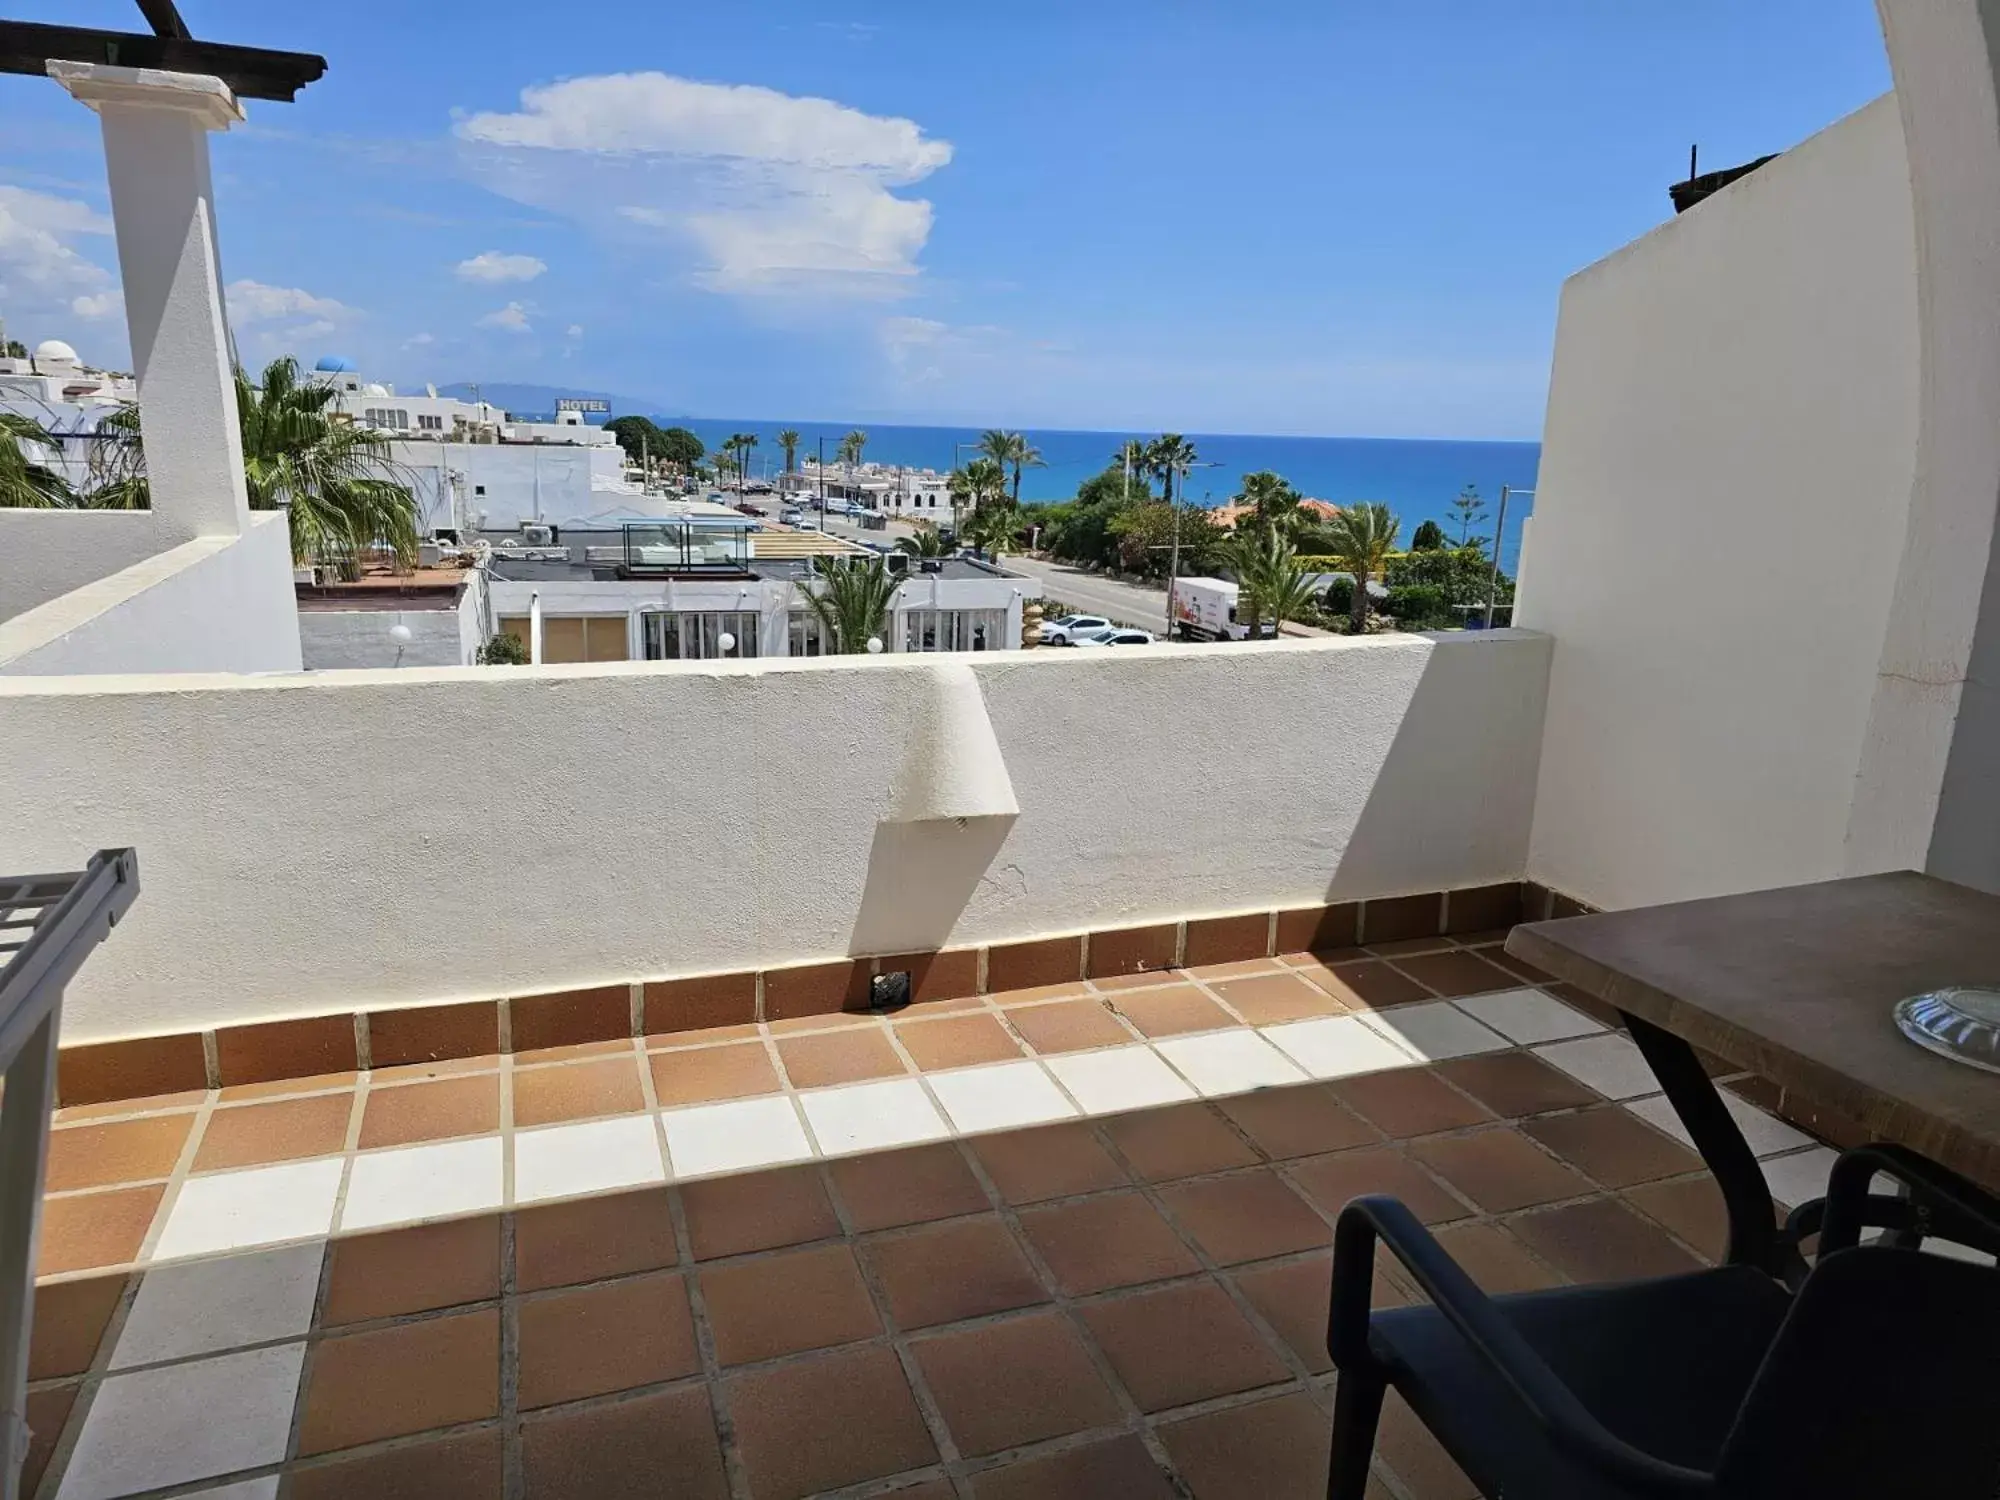 Balcony/Terrace in Hotel Puntazo II